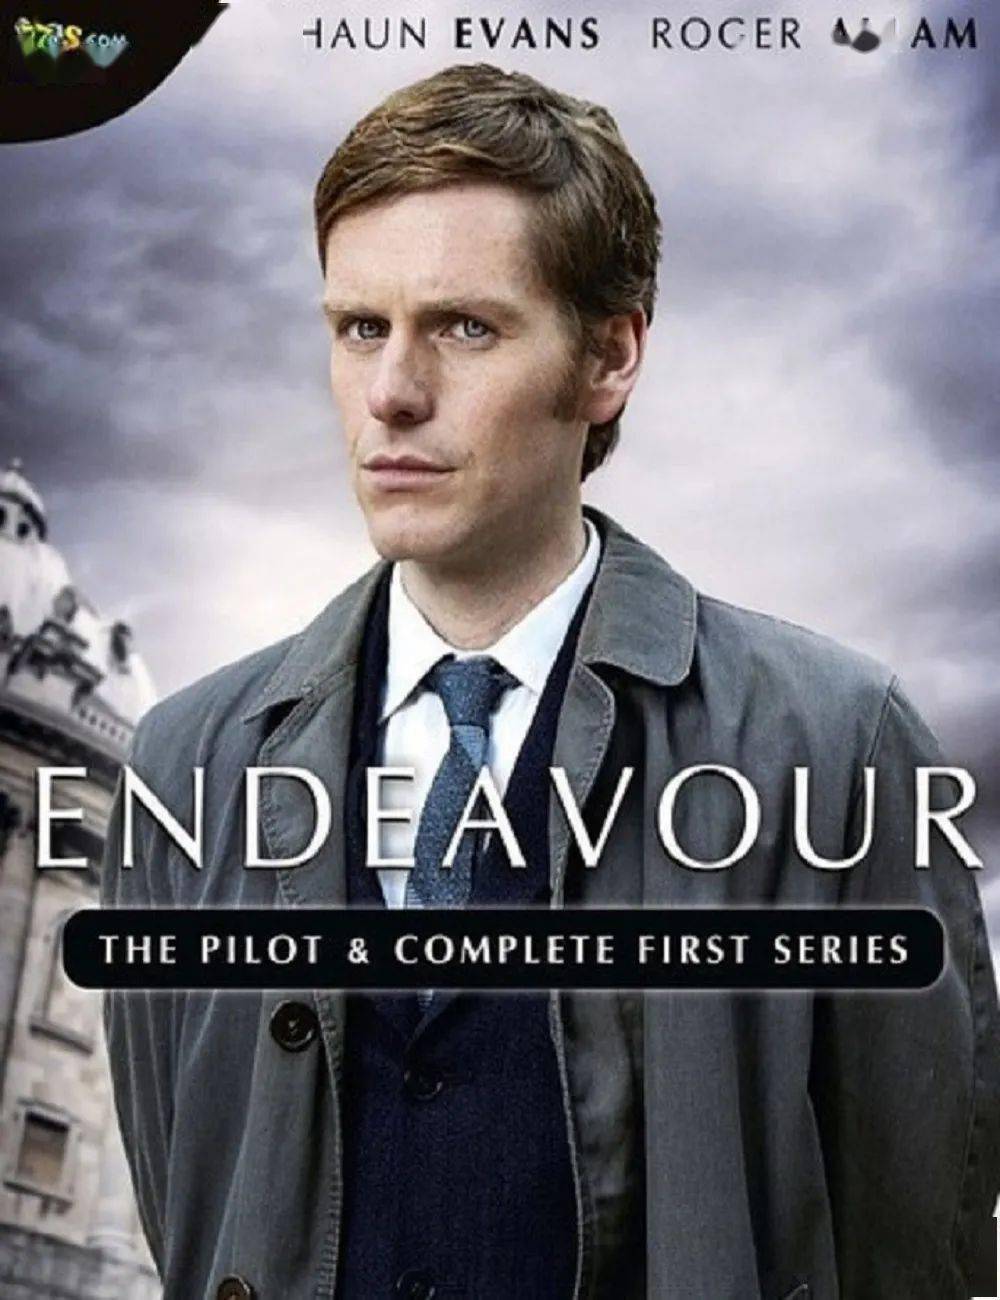 该剧继承了英国侦探片中保守与创新的特色,共有七季,其中有六季的评分